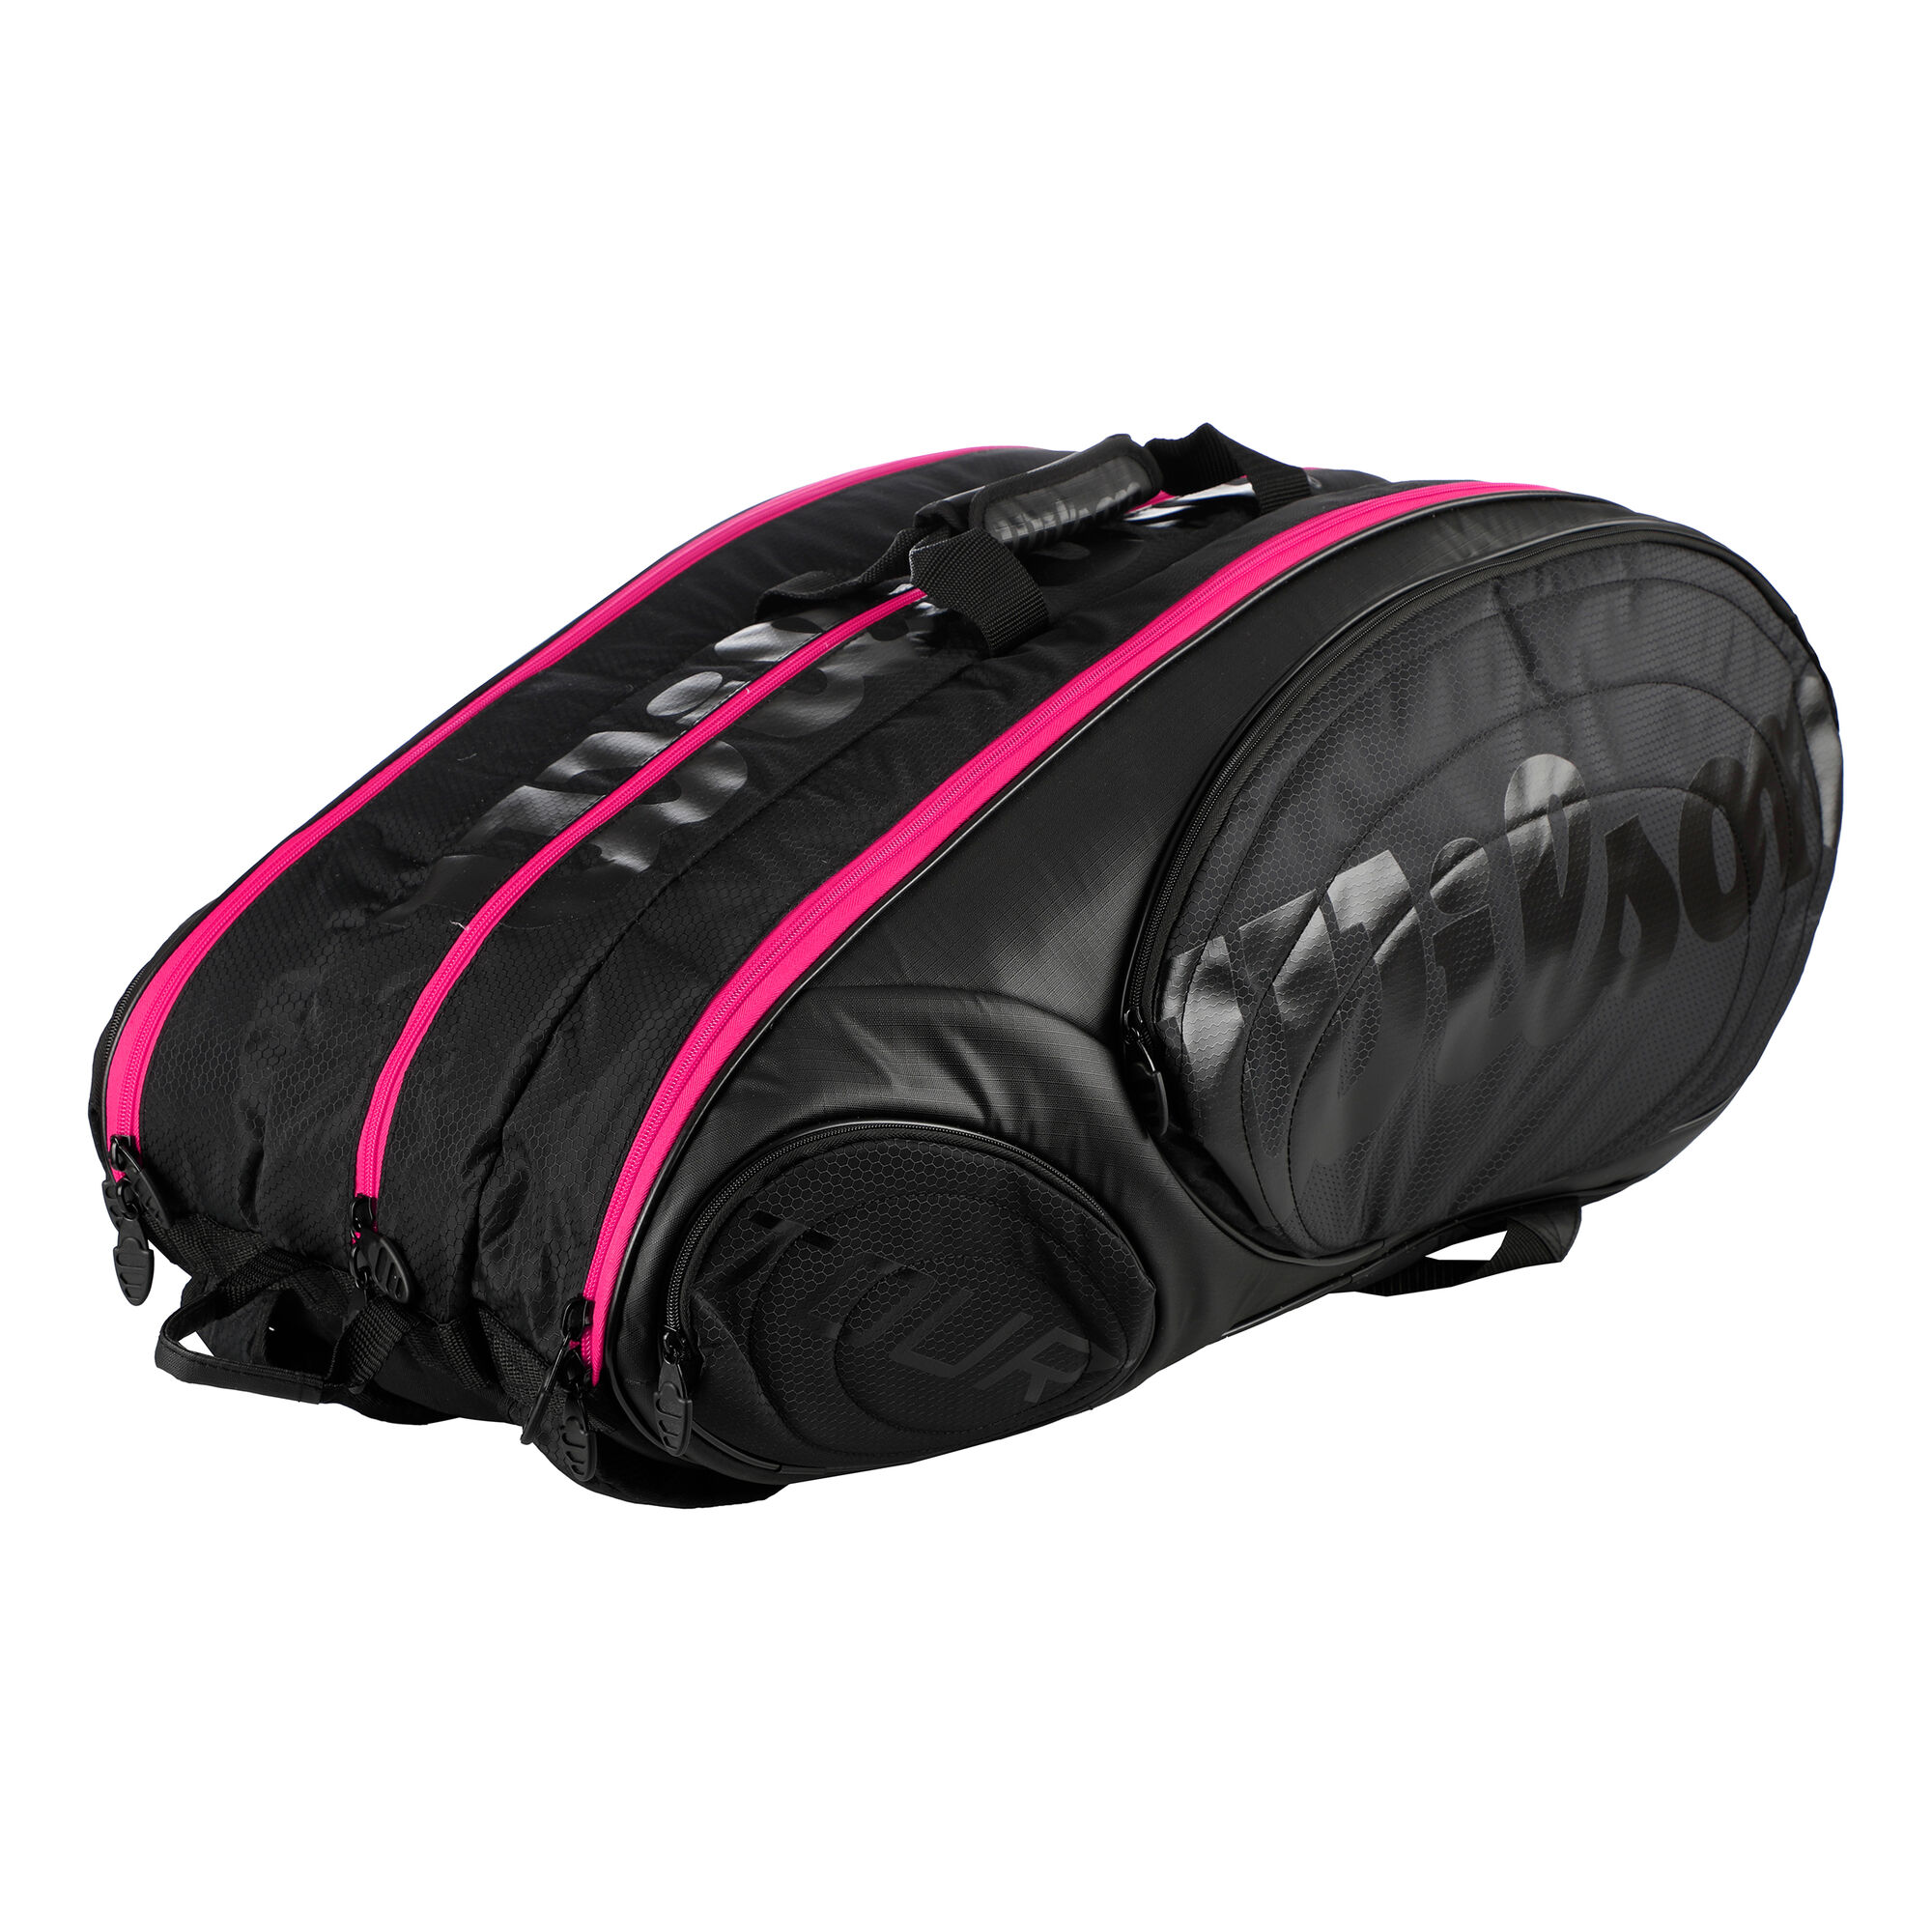 Wilson, Bags, Wilson Pink Tennis Backpack Bag